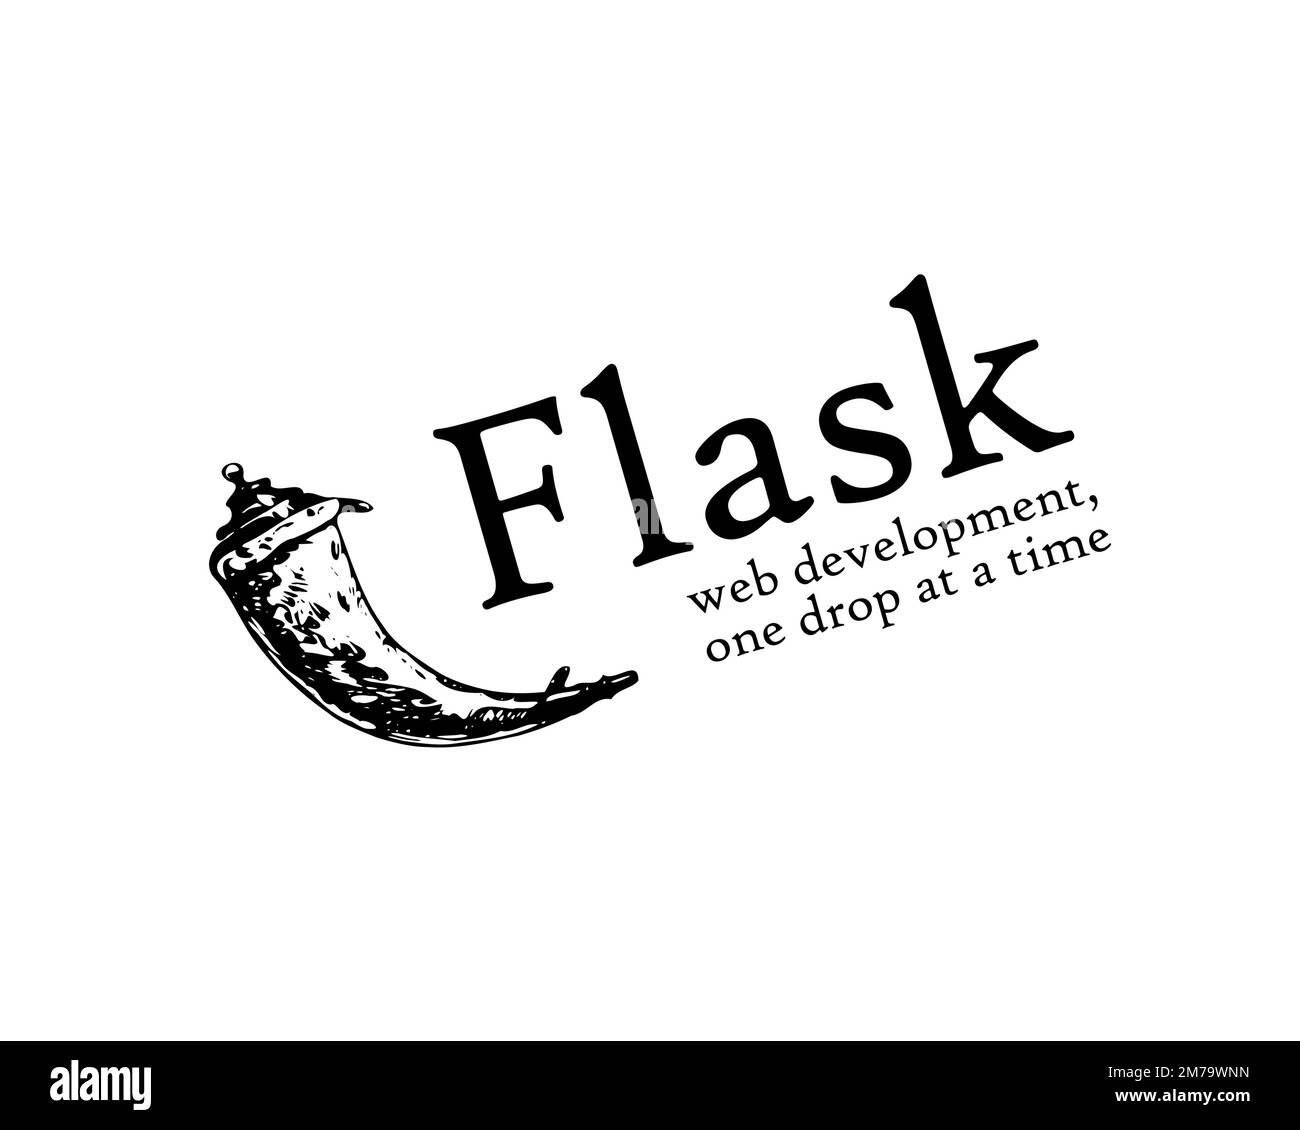 Flask web framework, rotated logo, white background Stock Photo